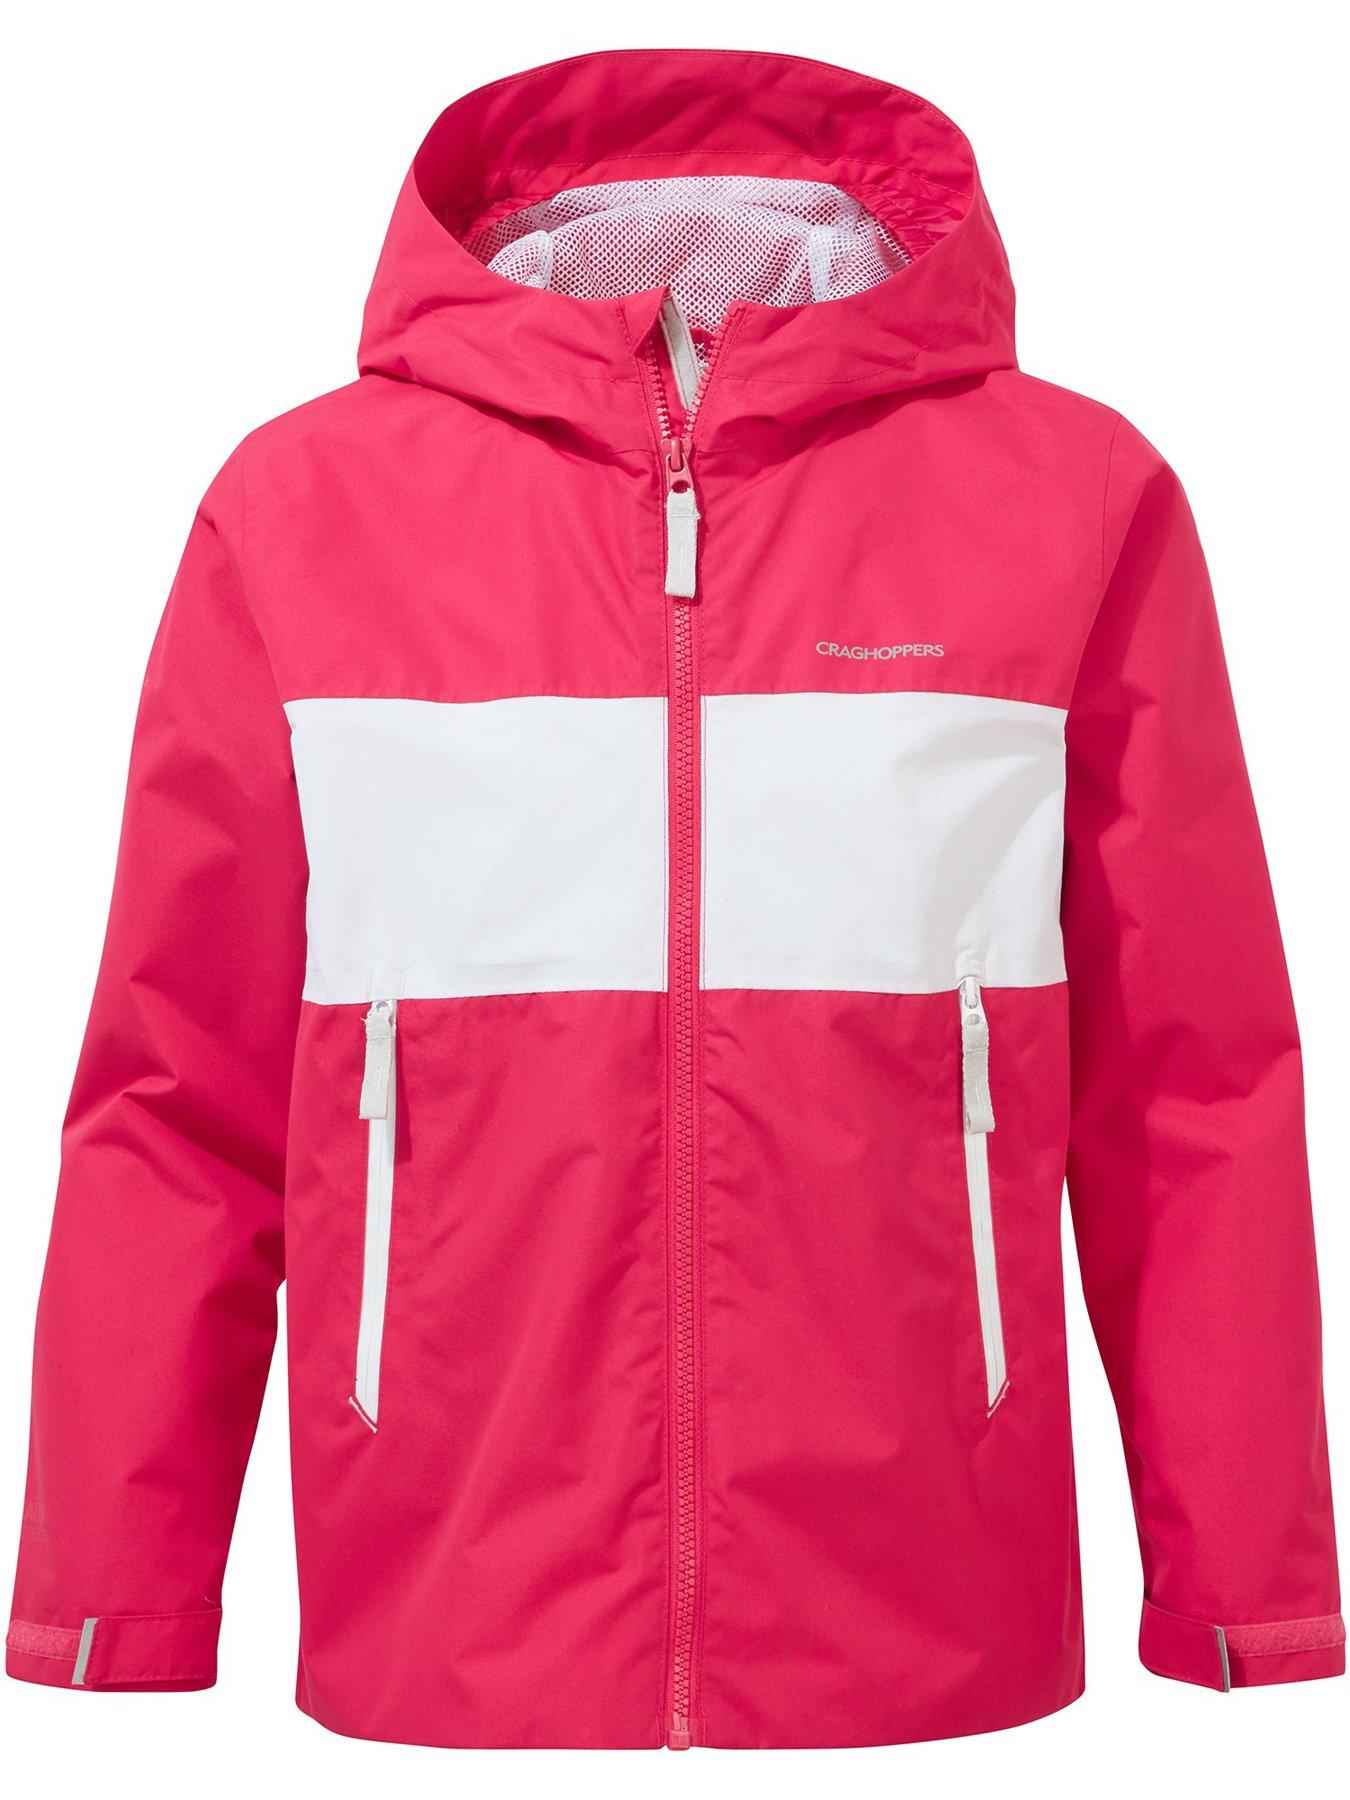  Craghoppers Kids Bellamy Waterproof Jacket - Pink